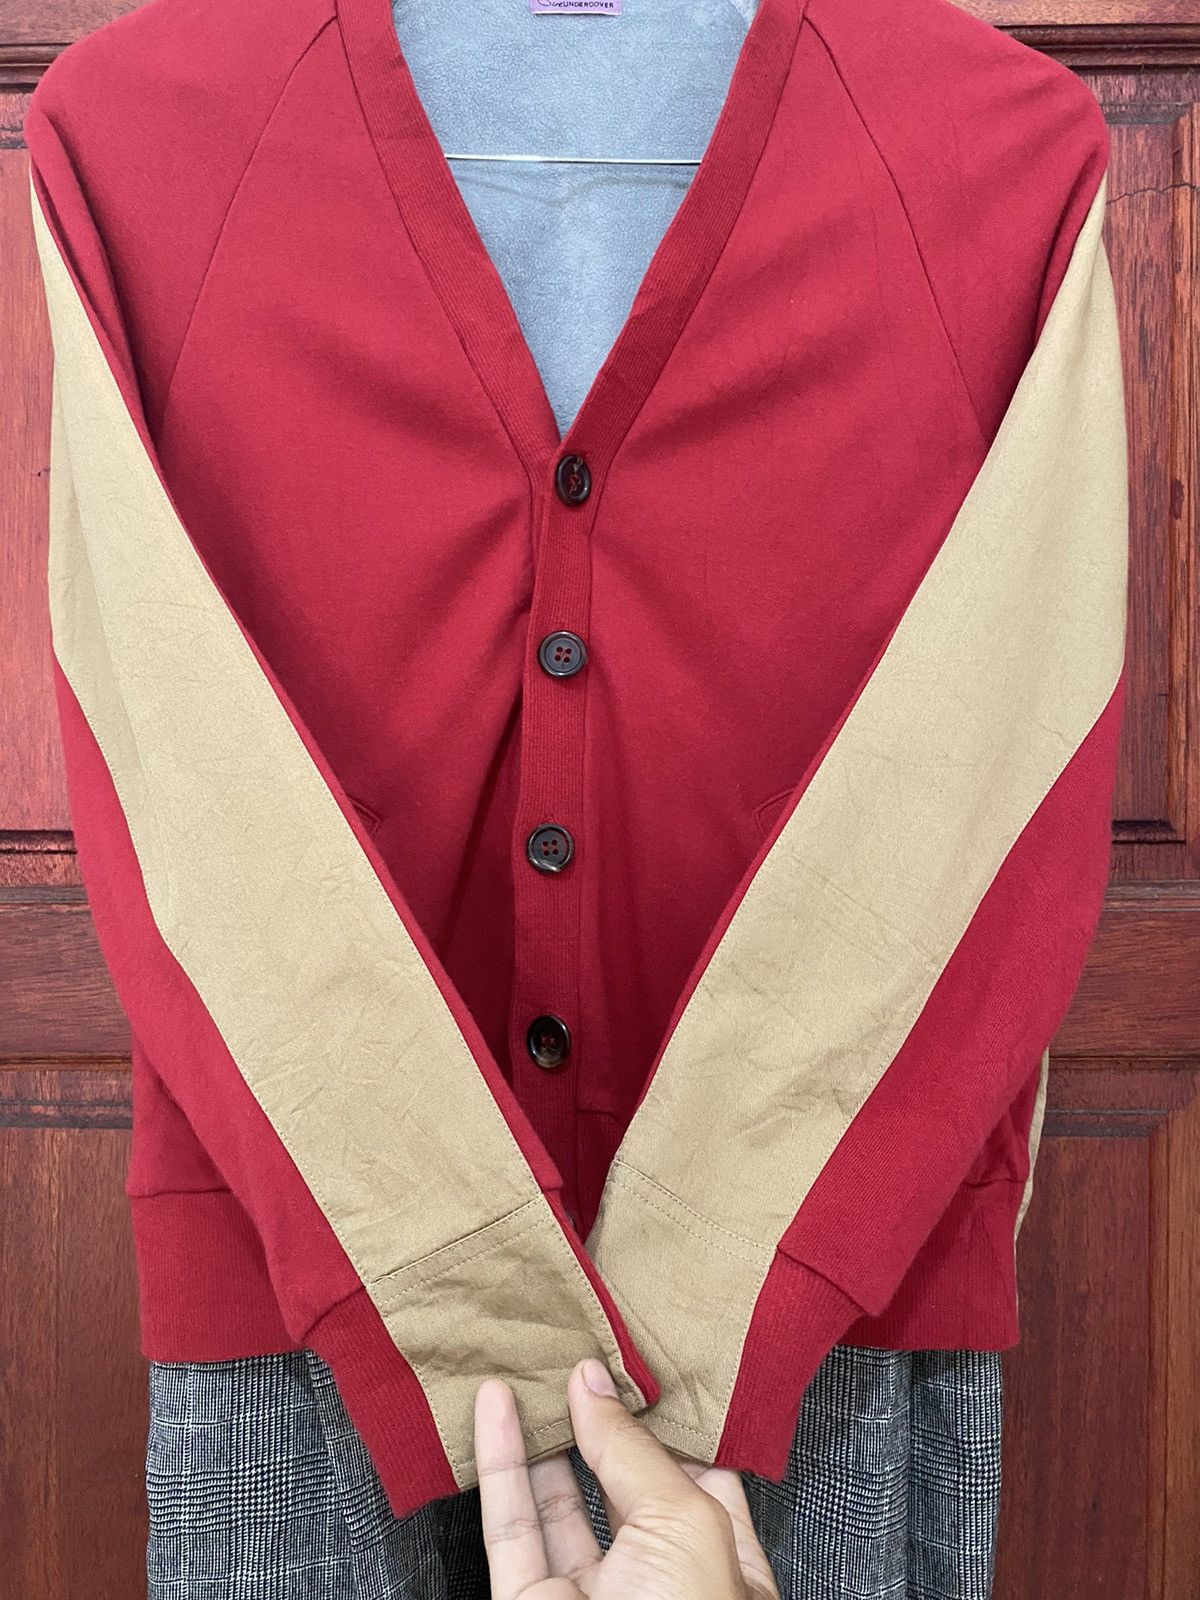 SueUNDERCOVER AW18 Cardigan Style Jacket - 7